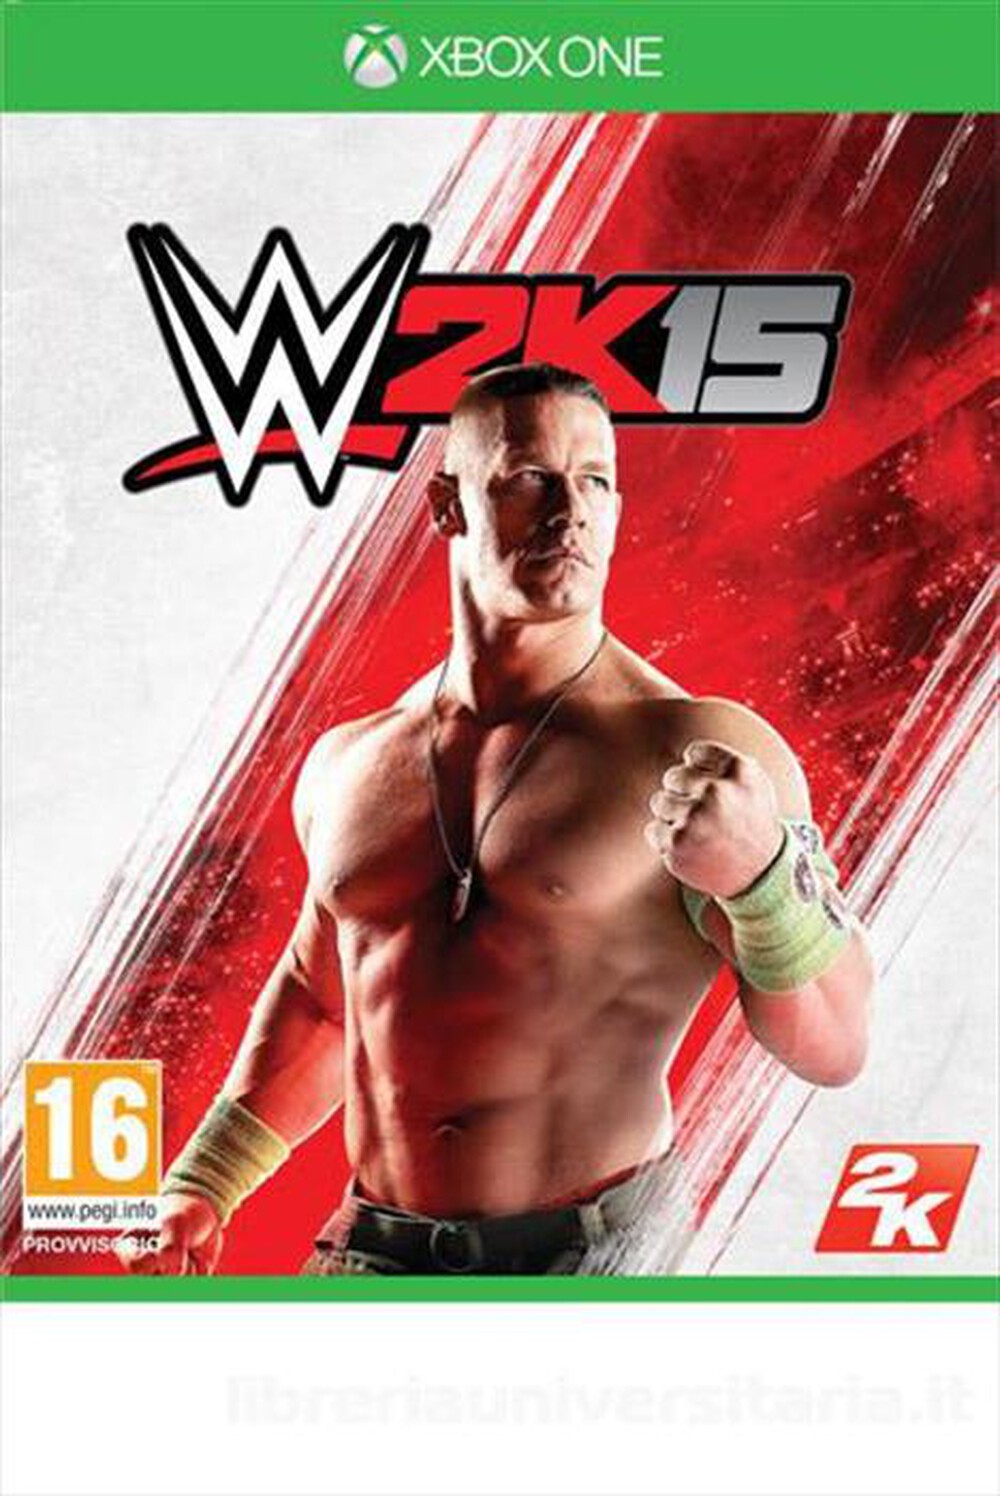 "TAKE TWO - WWE 2K15 Xbox One"